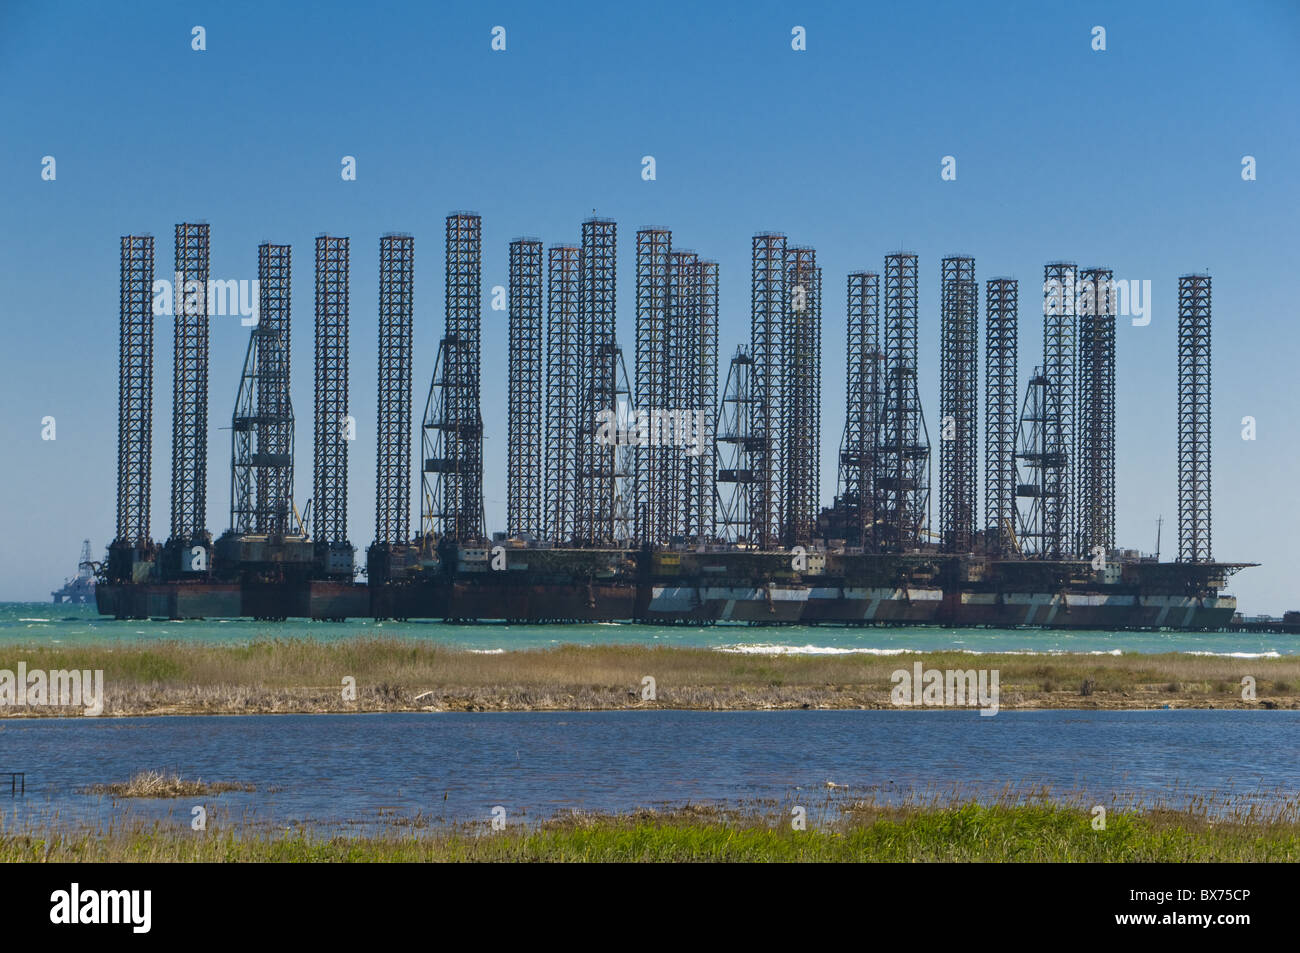 Offshore oil rigs at the Baku Bay, near Baku, Azerbaijan, Central Asia, Asia Stock Photo